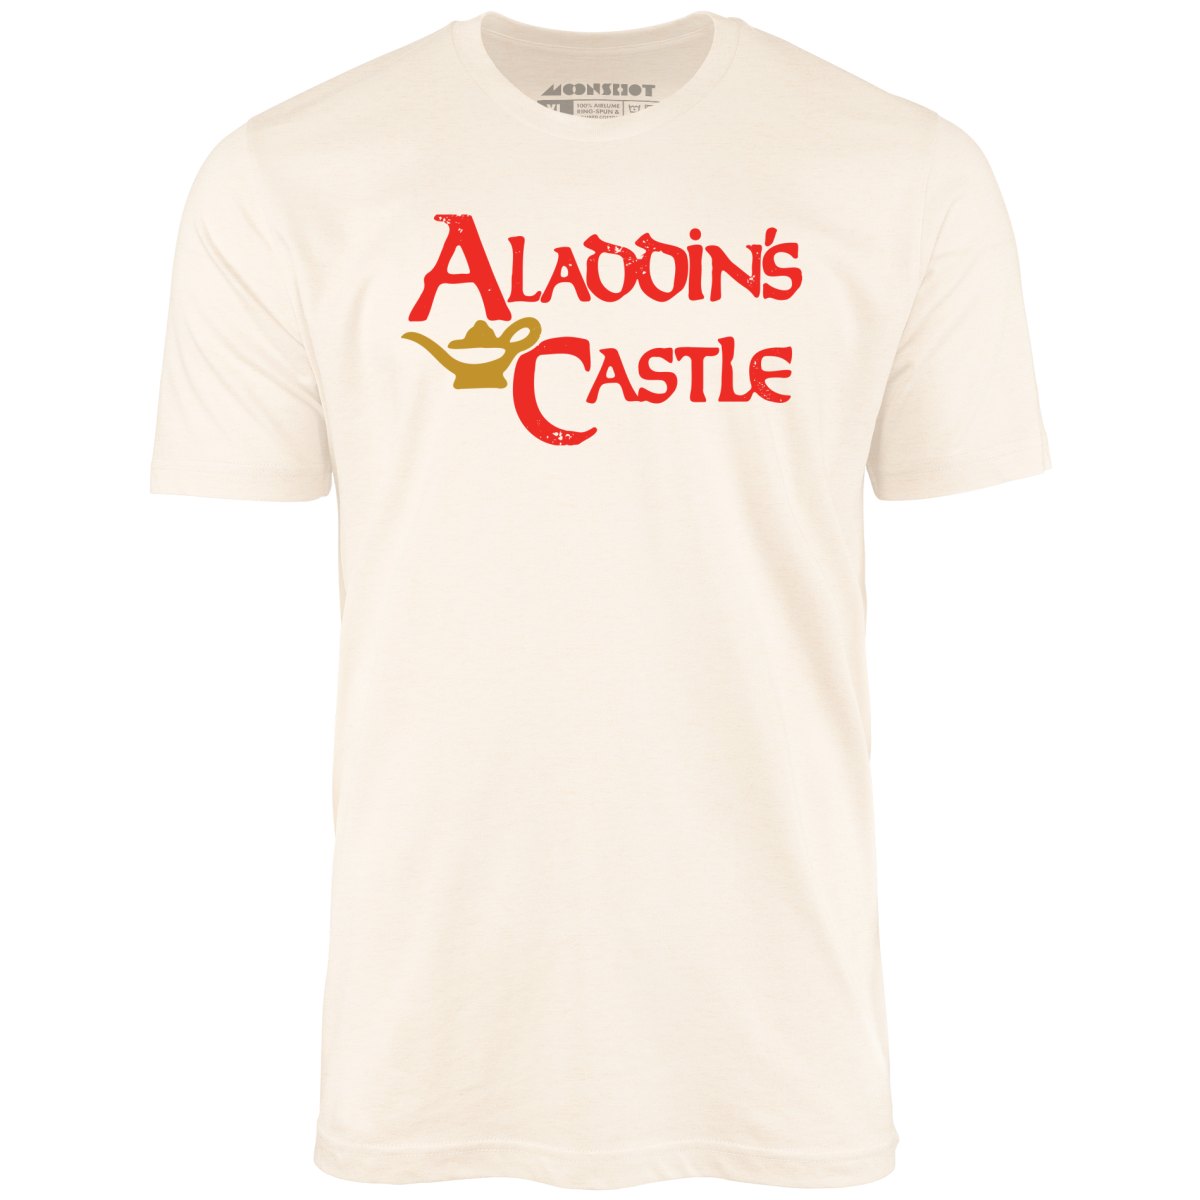 Aladdin's Castle - Unisex T-Shirt